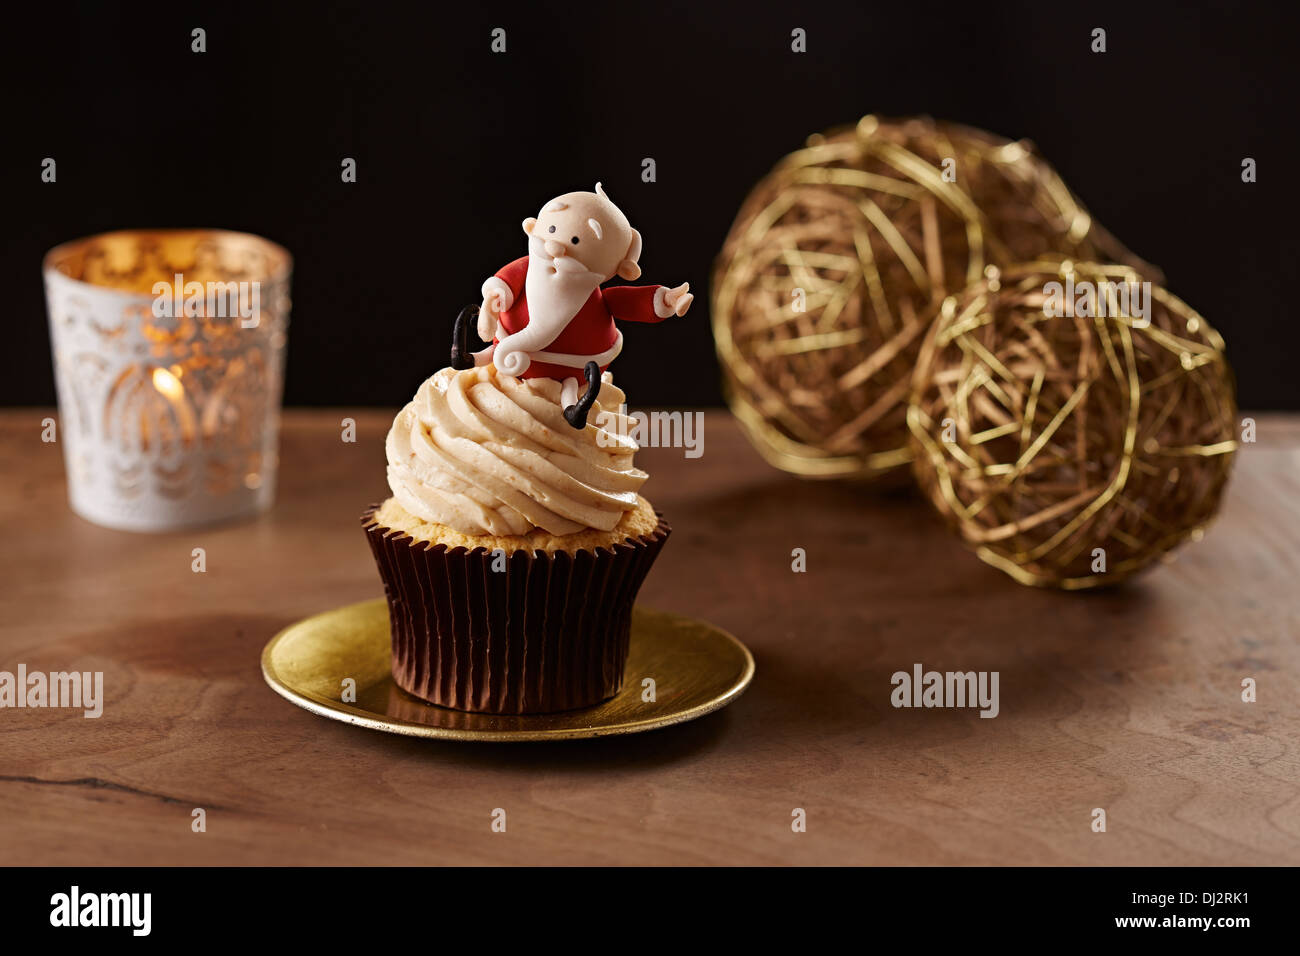 Santa Claus Noël fond noir sur cupcake Banque D'Images